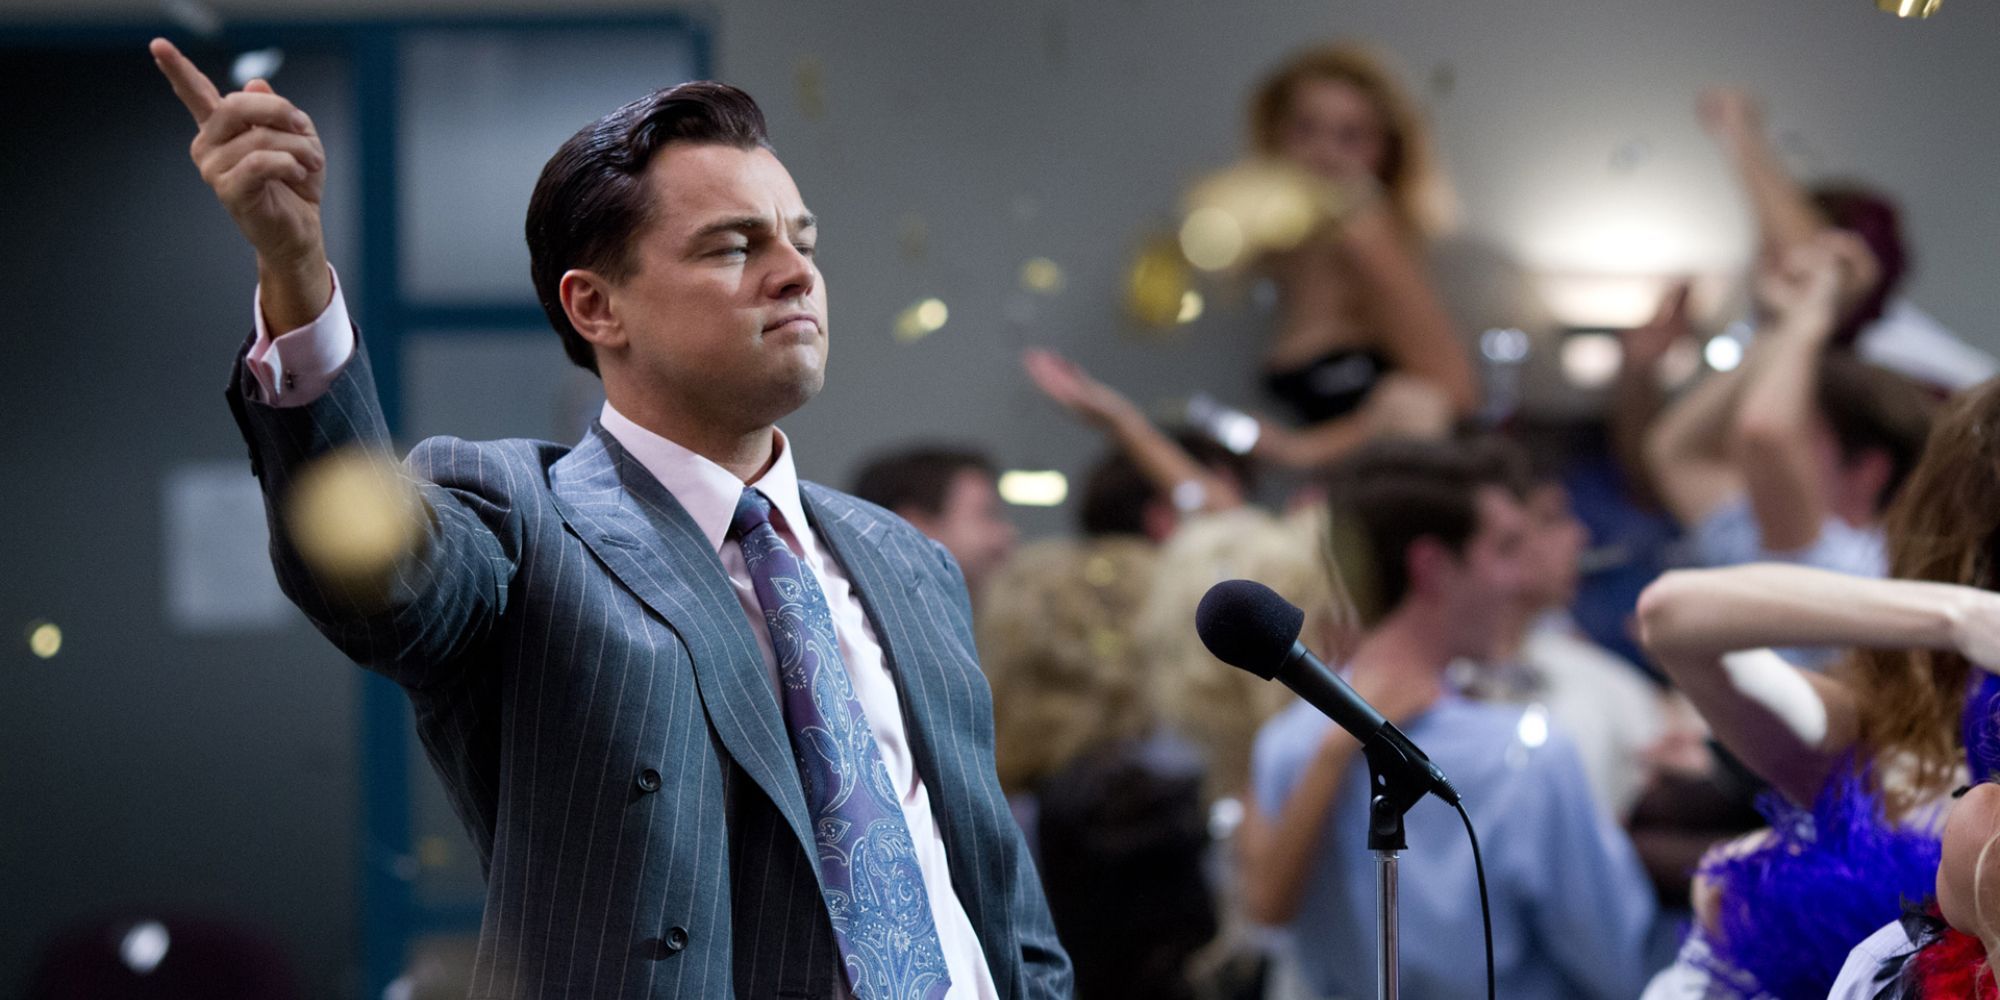 Leonardo DiCaprio as Jordan Belfort in The Wolf of Wall Street (2013)